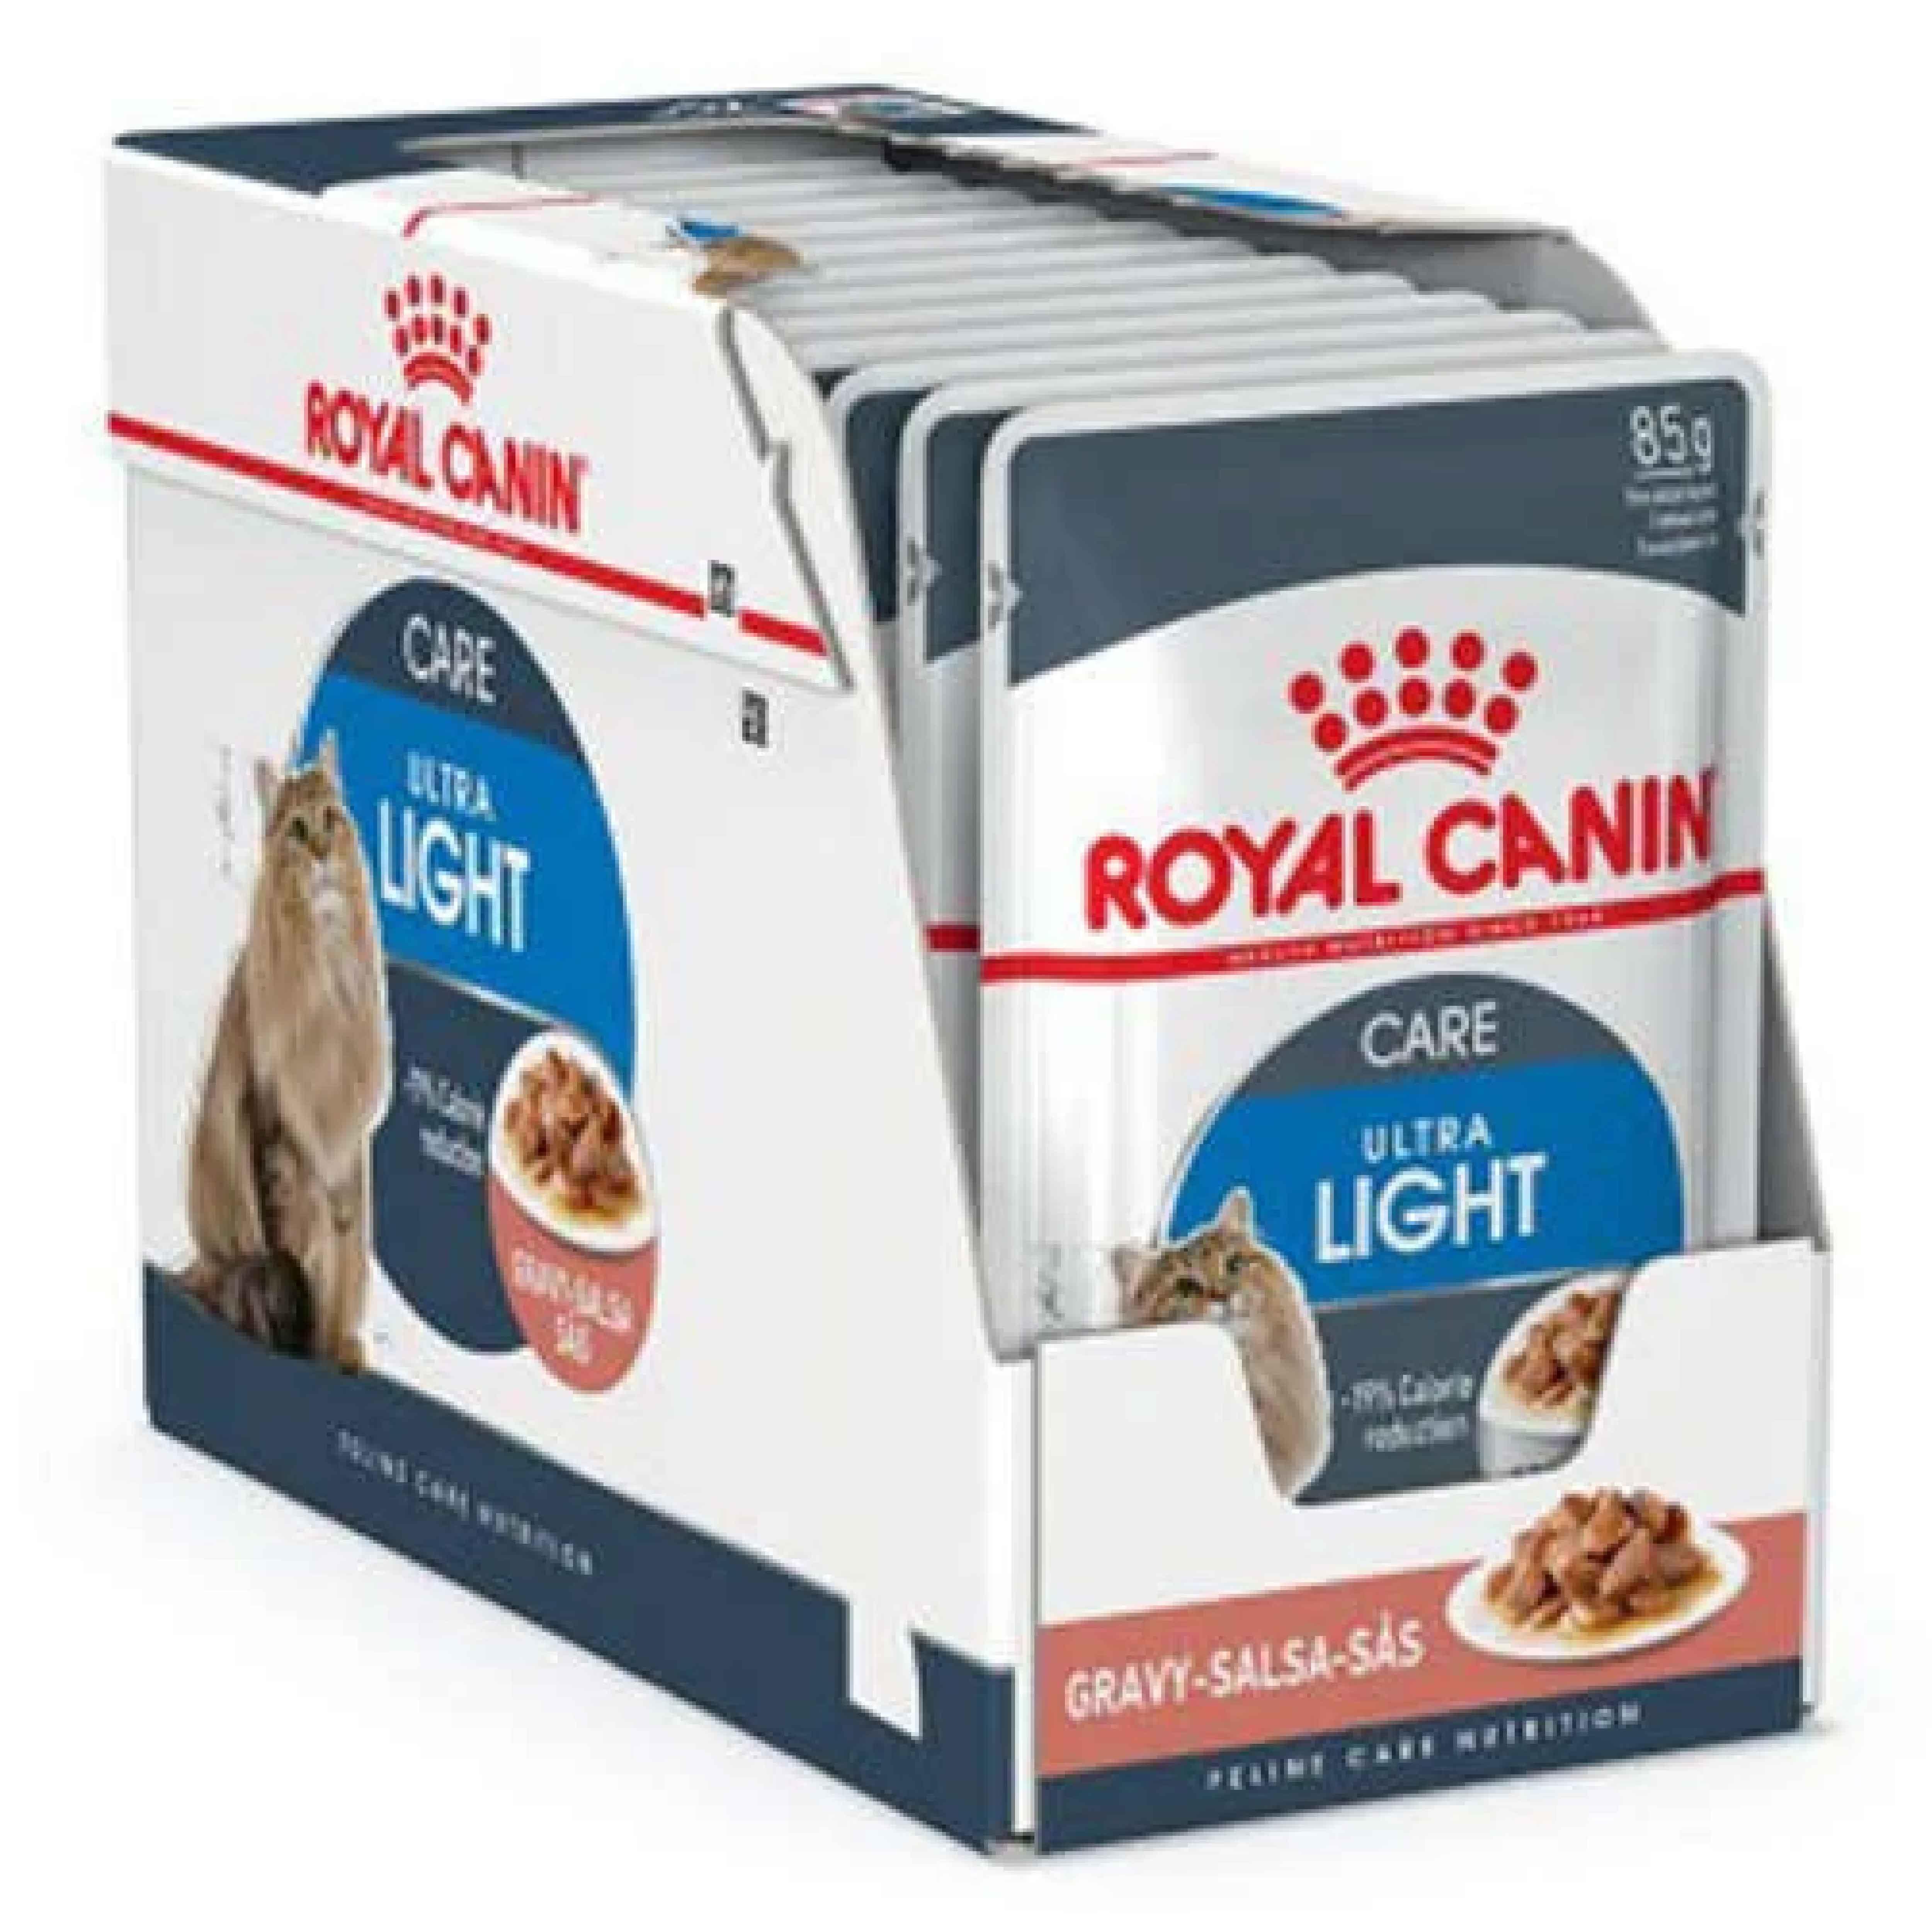 Royal Canin Ultra Light Diyet Yaş Kedi Maması 85 Gr-(12 Adetx85 Gr)